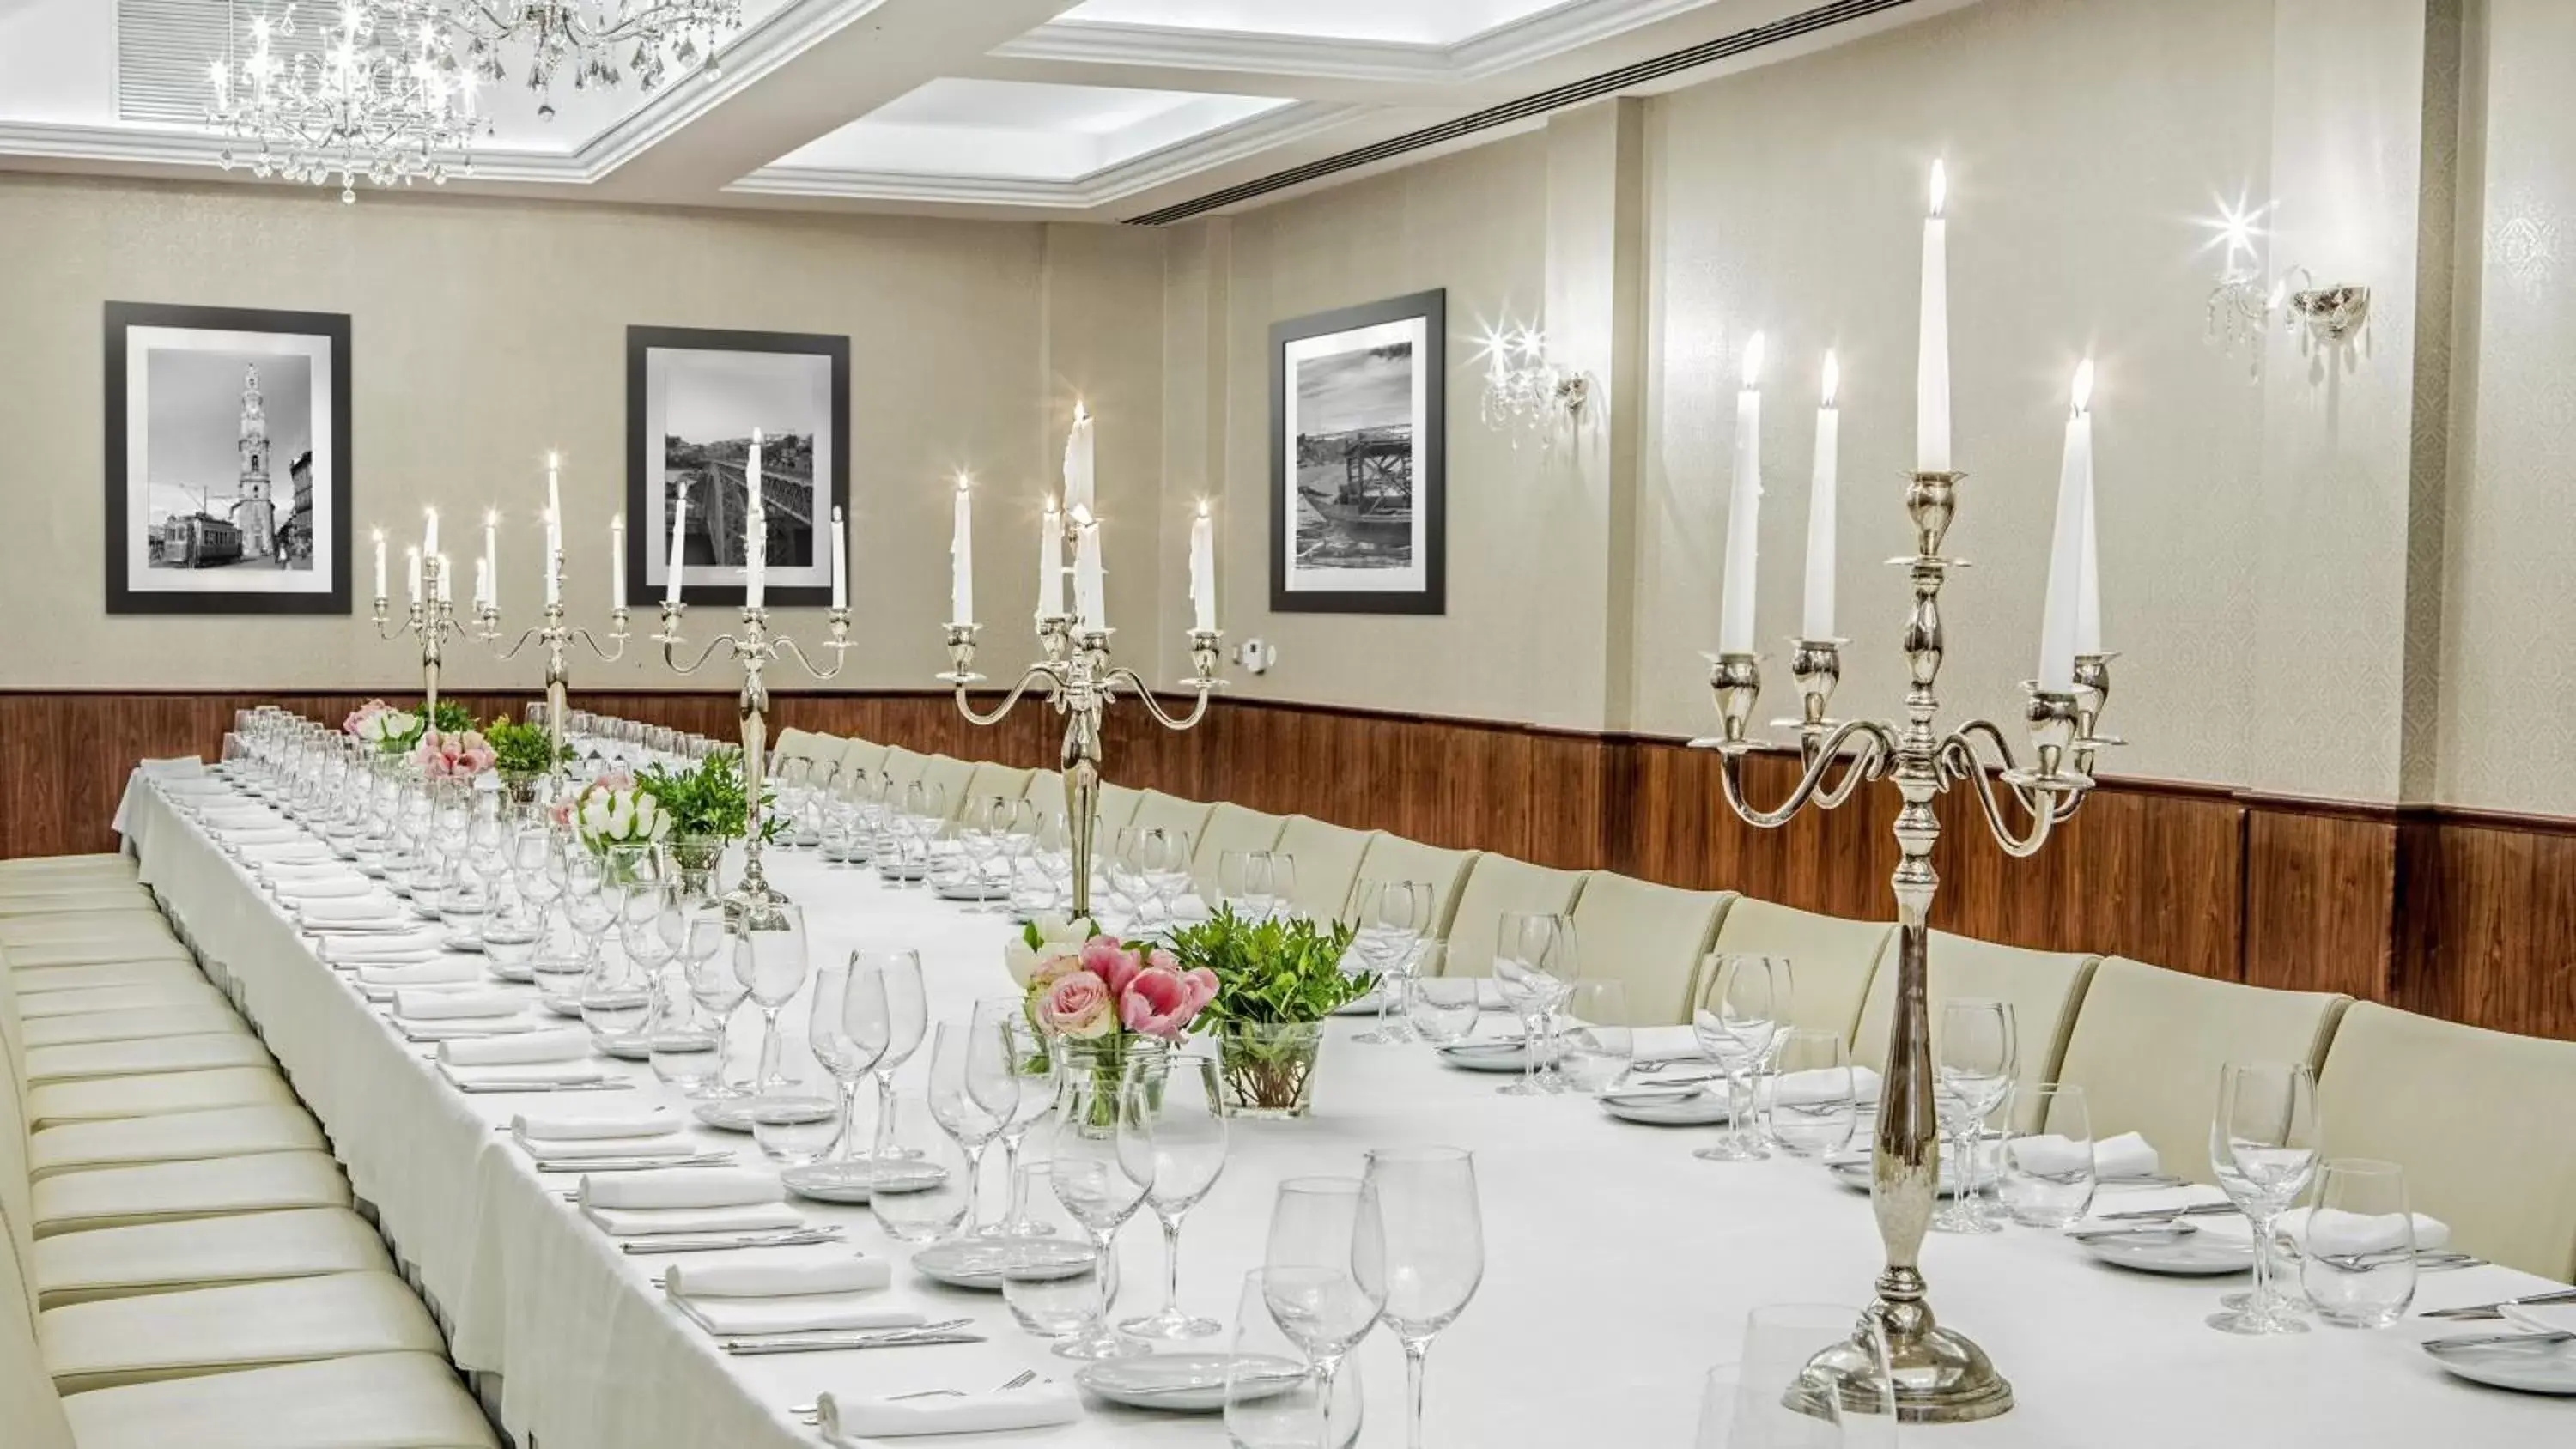 Banquet/Function facilities, Banquet Facilities in InterContinental Porto - Palacio das Cardosas, an IHG Hotel